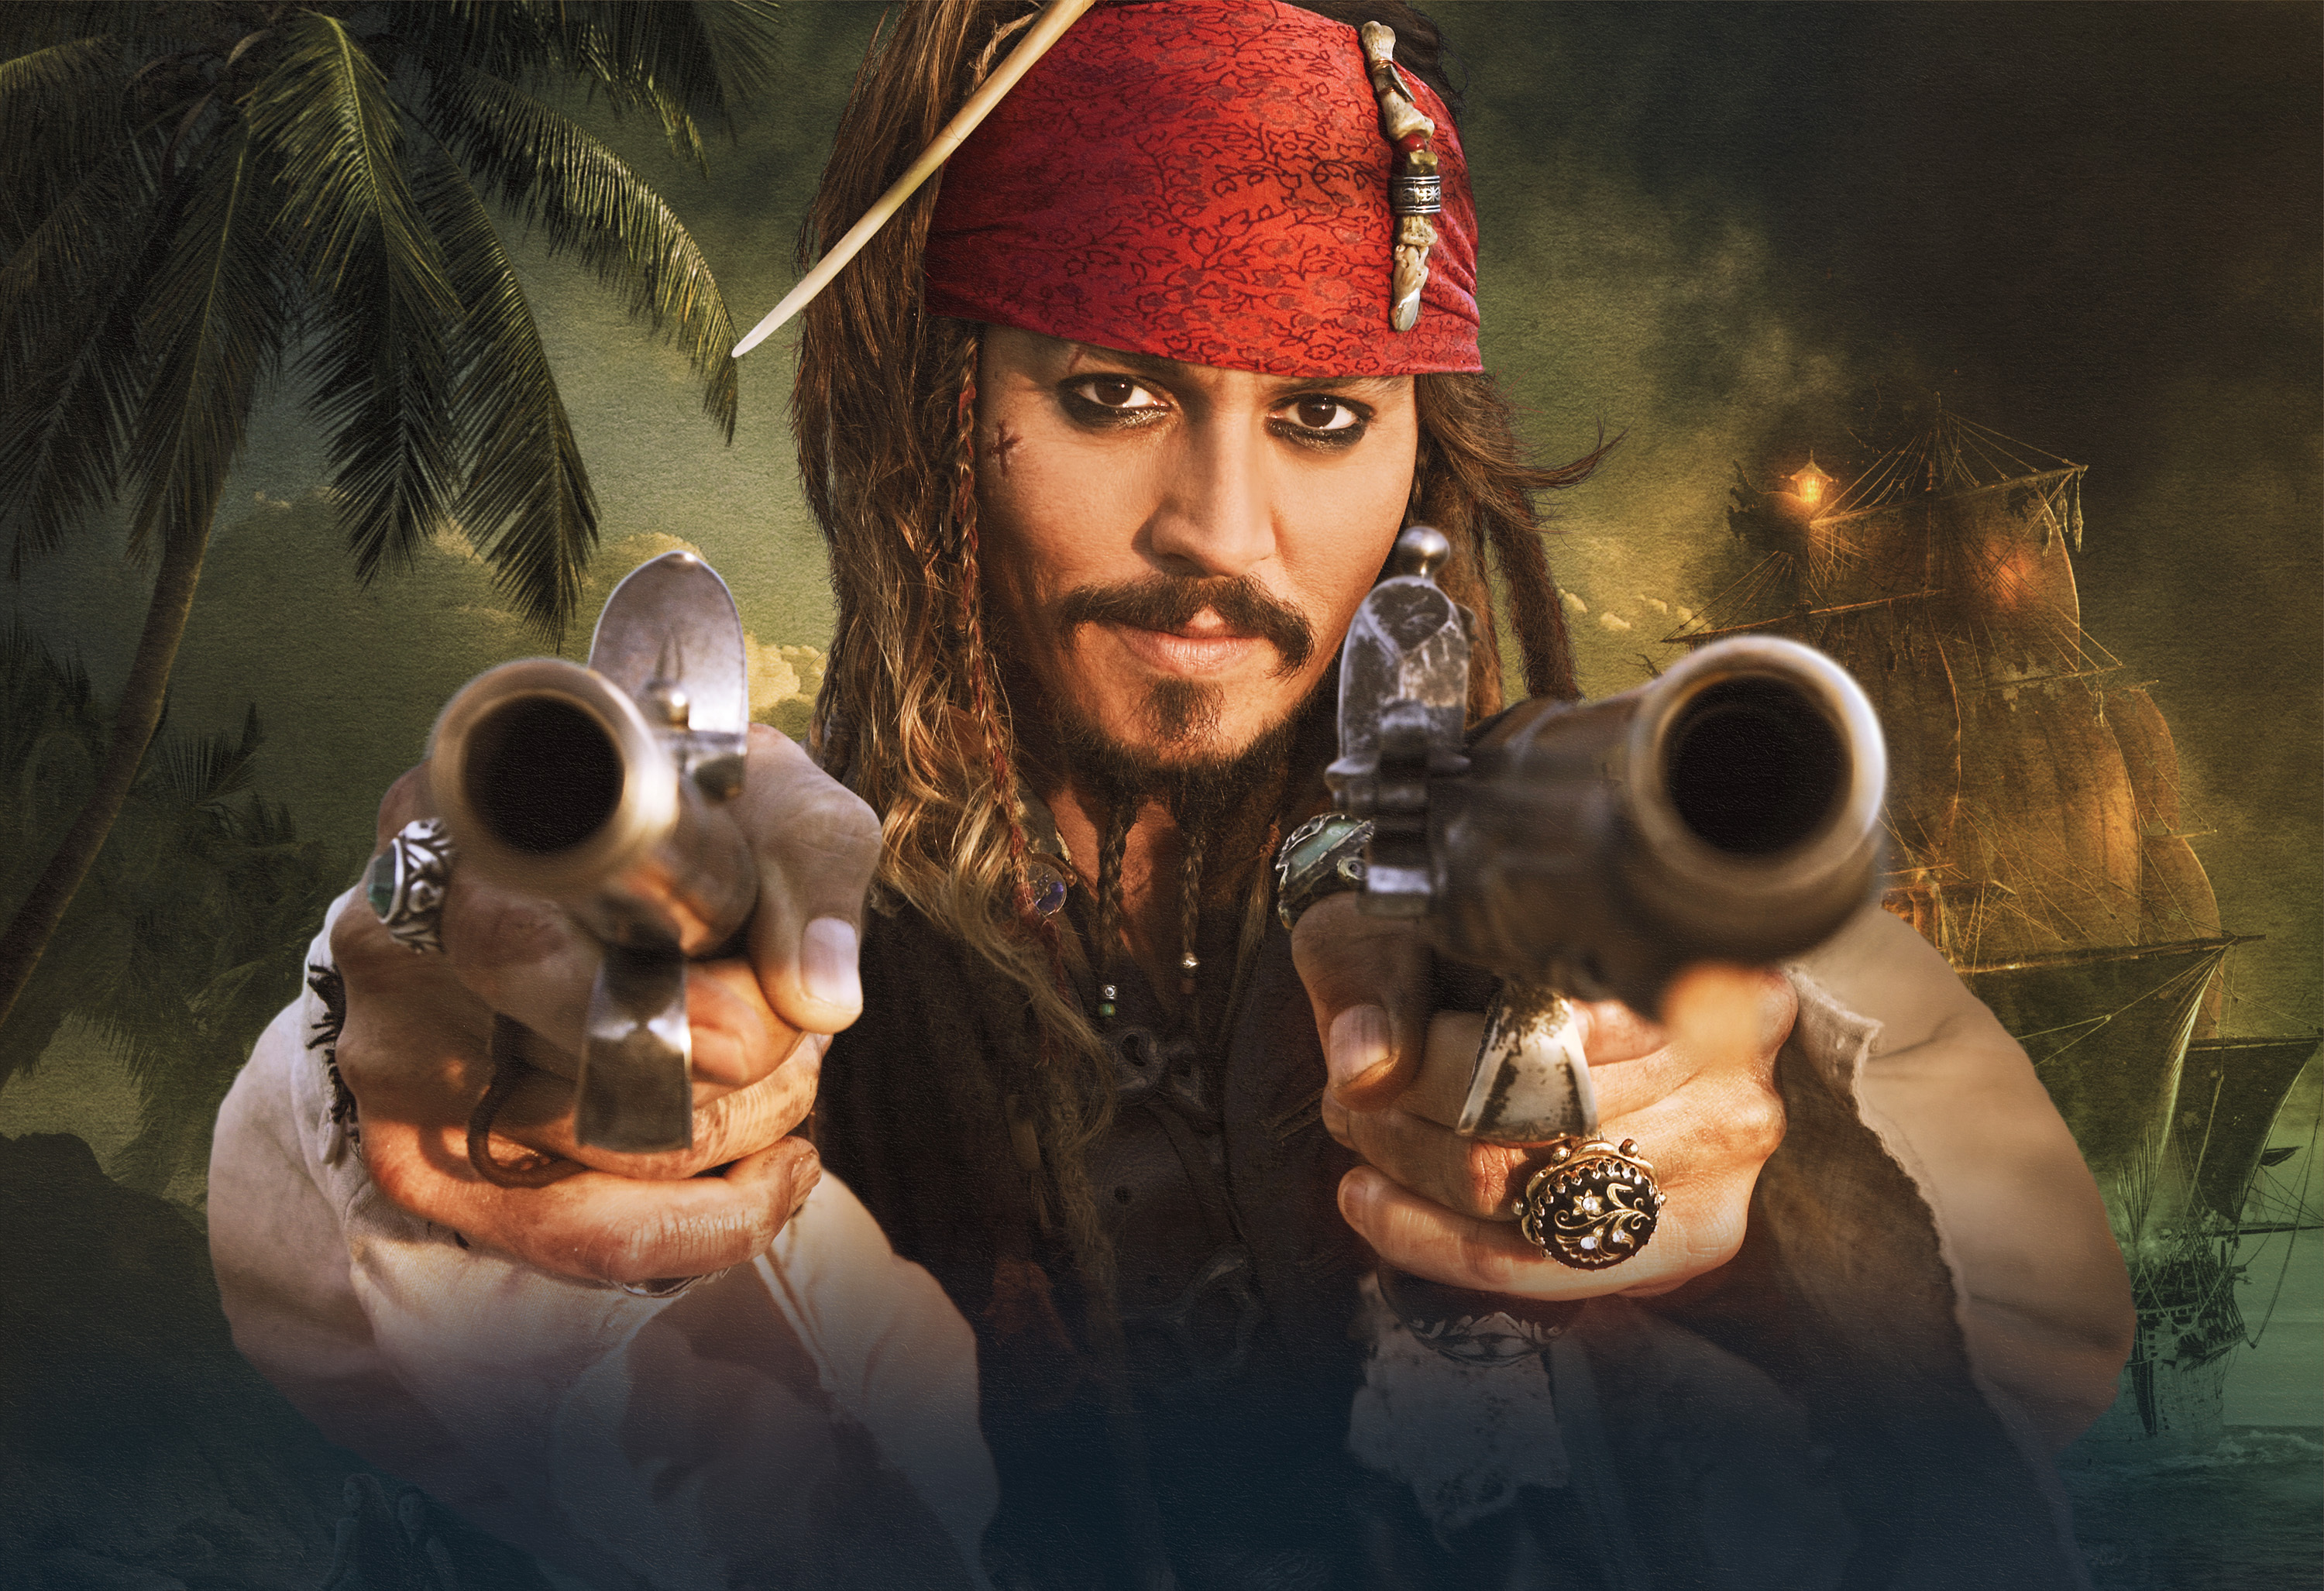 204715 免費下載壁紙 电影, 加勒比海盗4：惊涛怪浪, 杰克·斯派洛, 约翰尼·德普, 海盗, 加勒比海盗 屏保和圖片